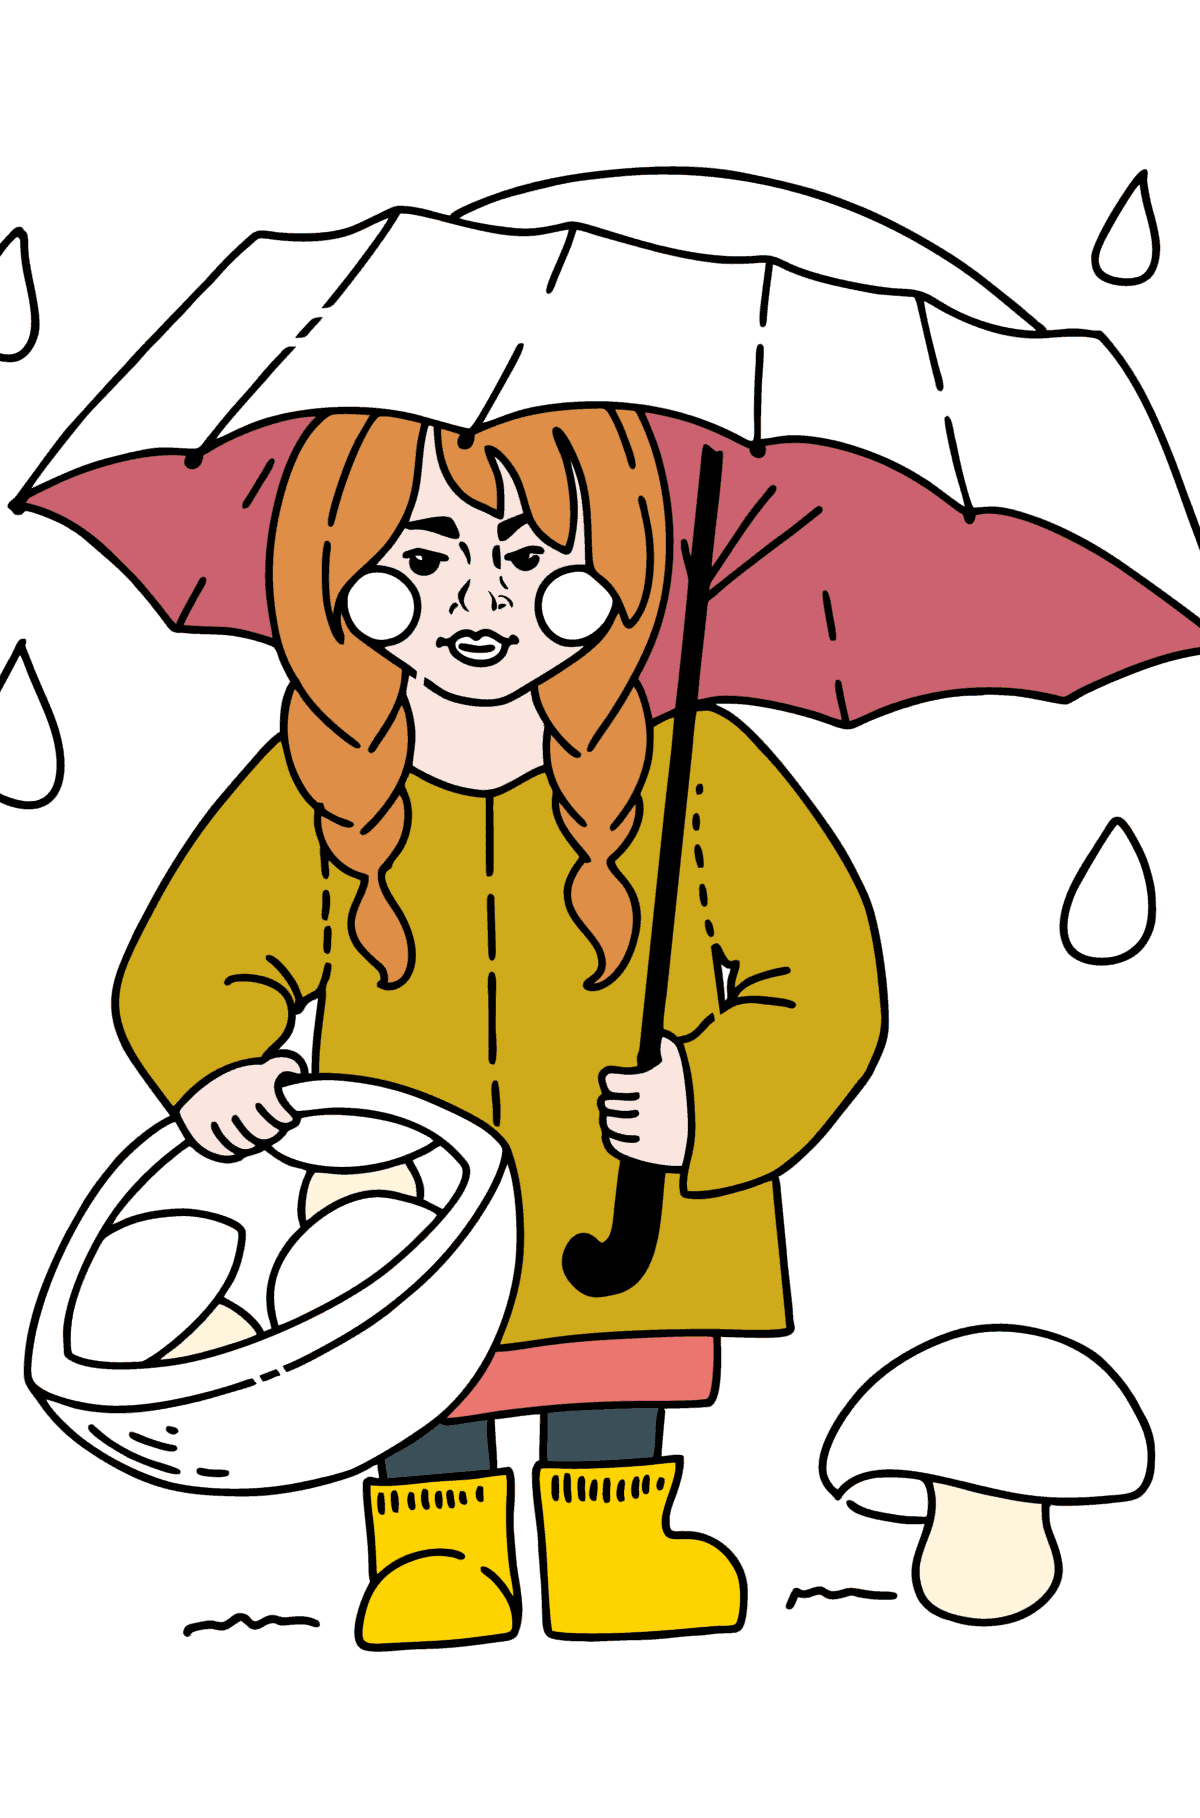 Kolorowanka - Dziewczyna zbierająca grzyby - Kolorowanki dla dzieci